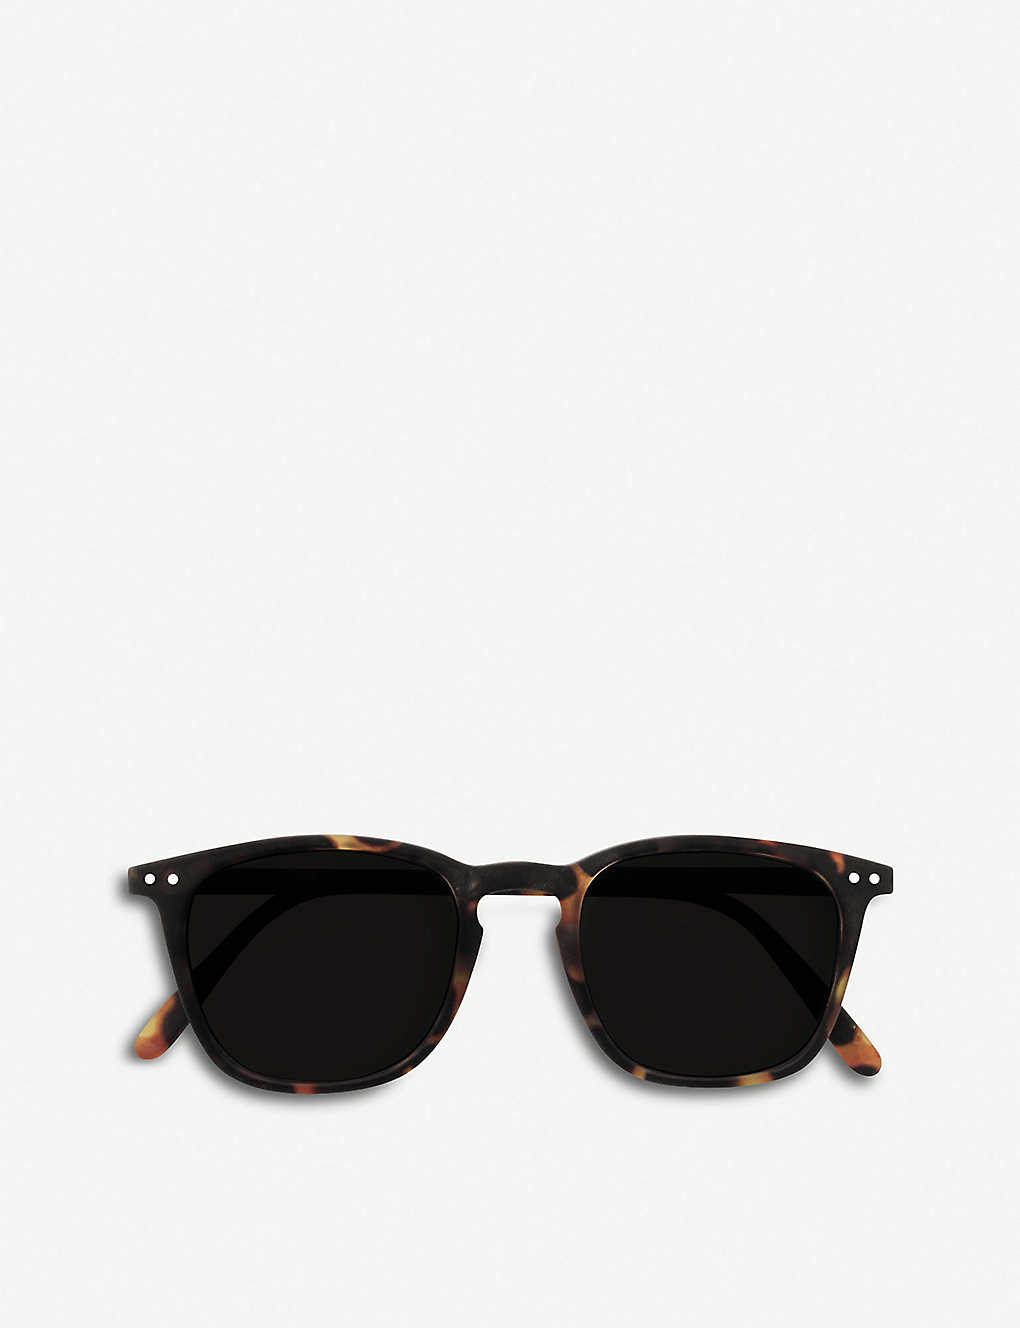 Izipizi Womens Black #e-frame Acetate Reading Sunglasses +1.00